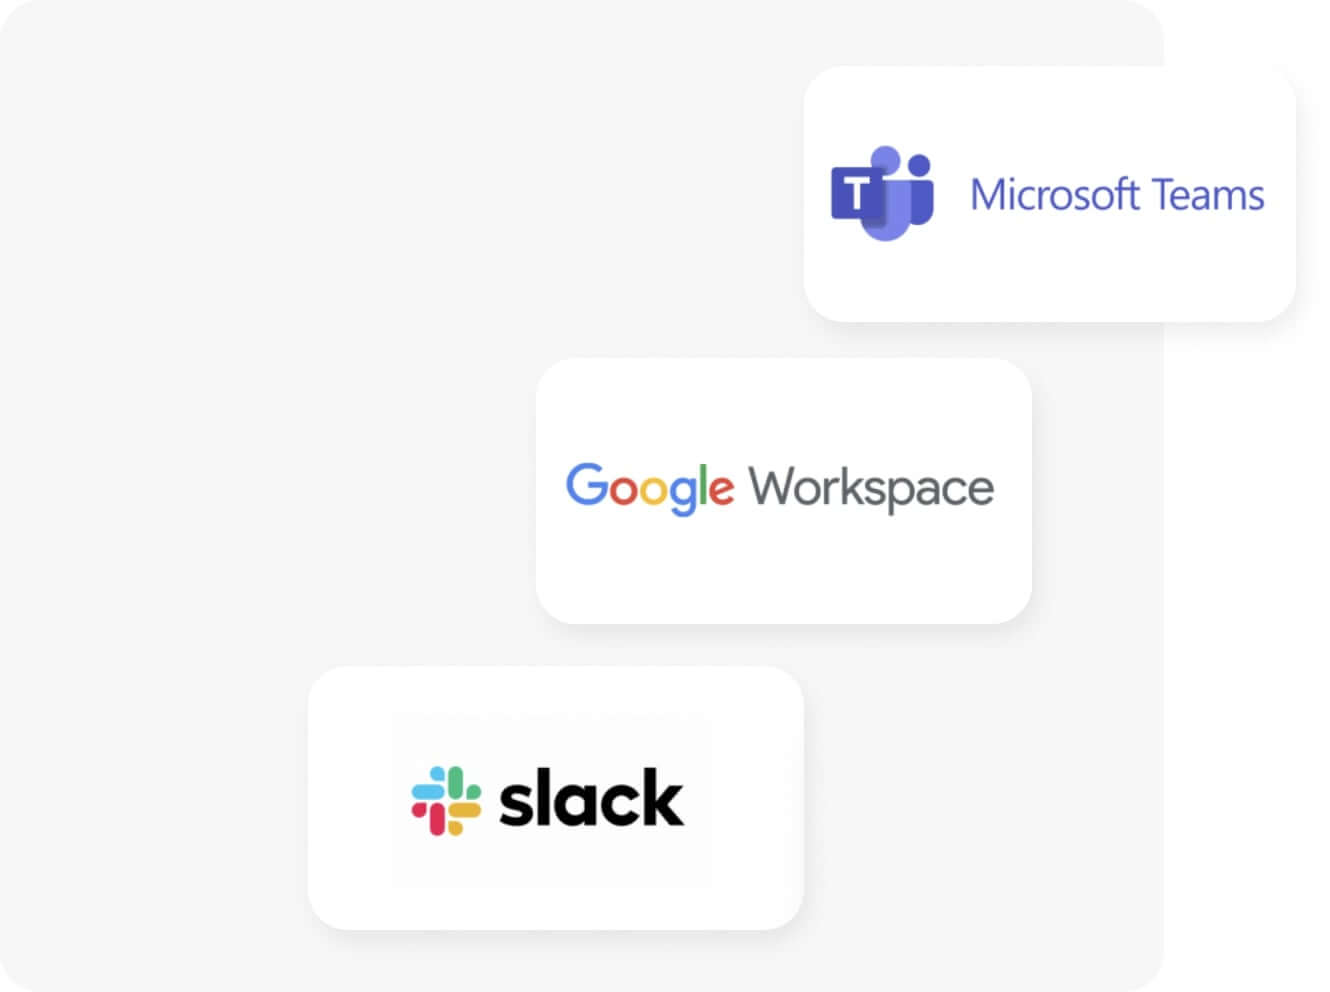 ¿Slack, Microsoft Teams, Google Workspace o correo electrónico?